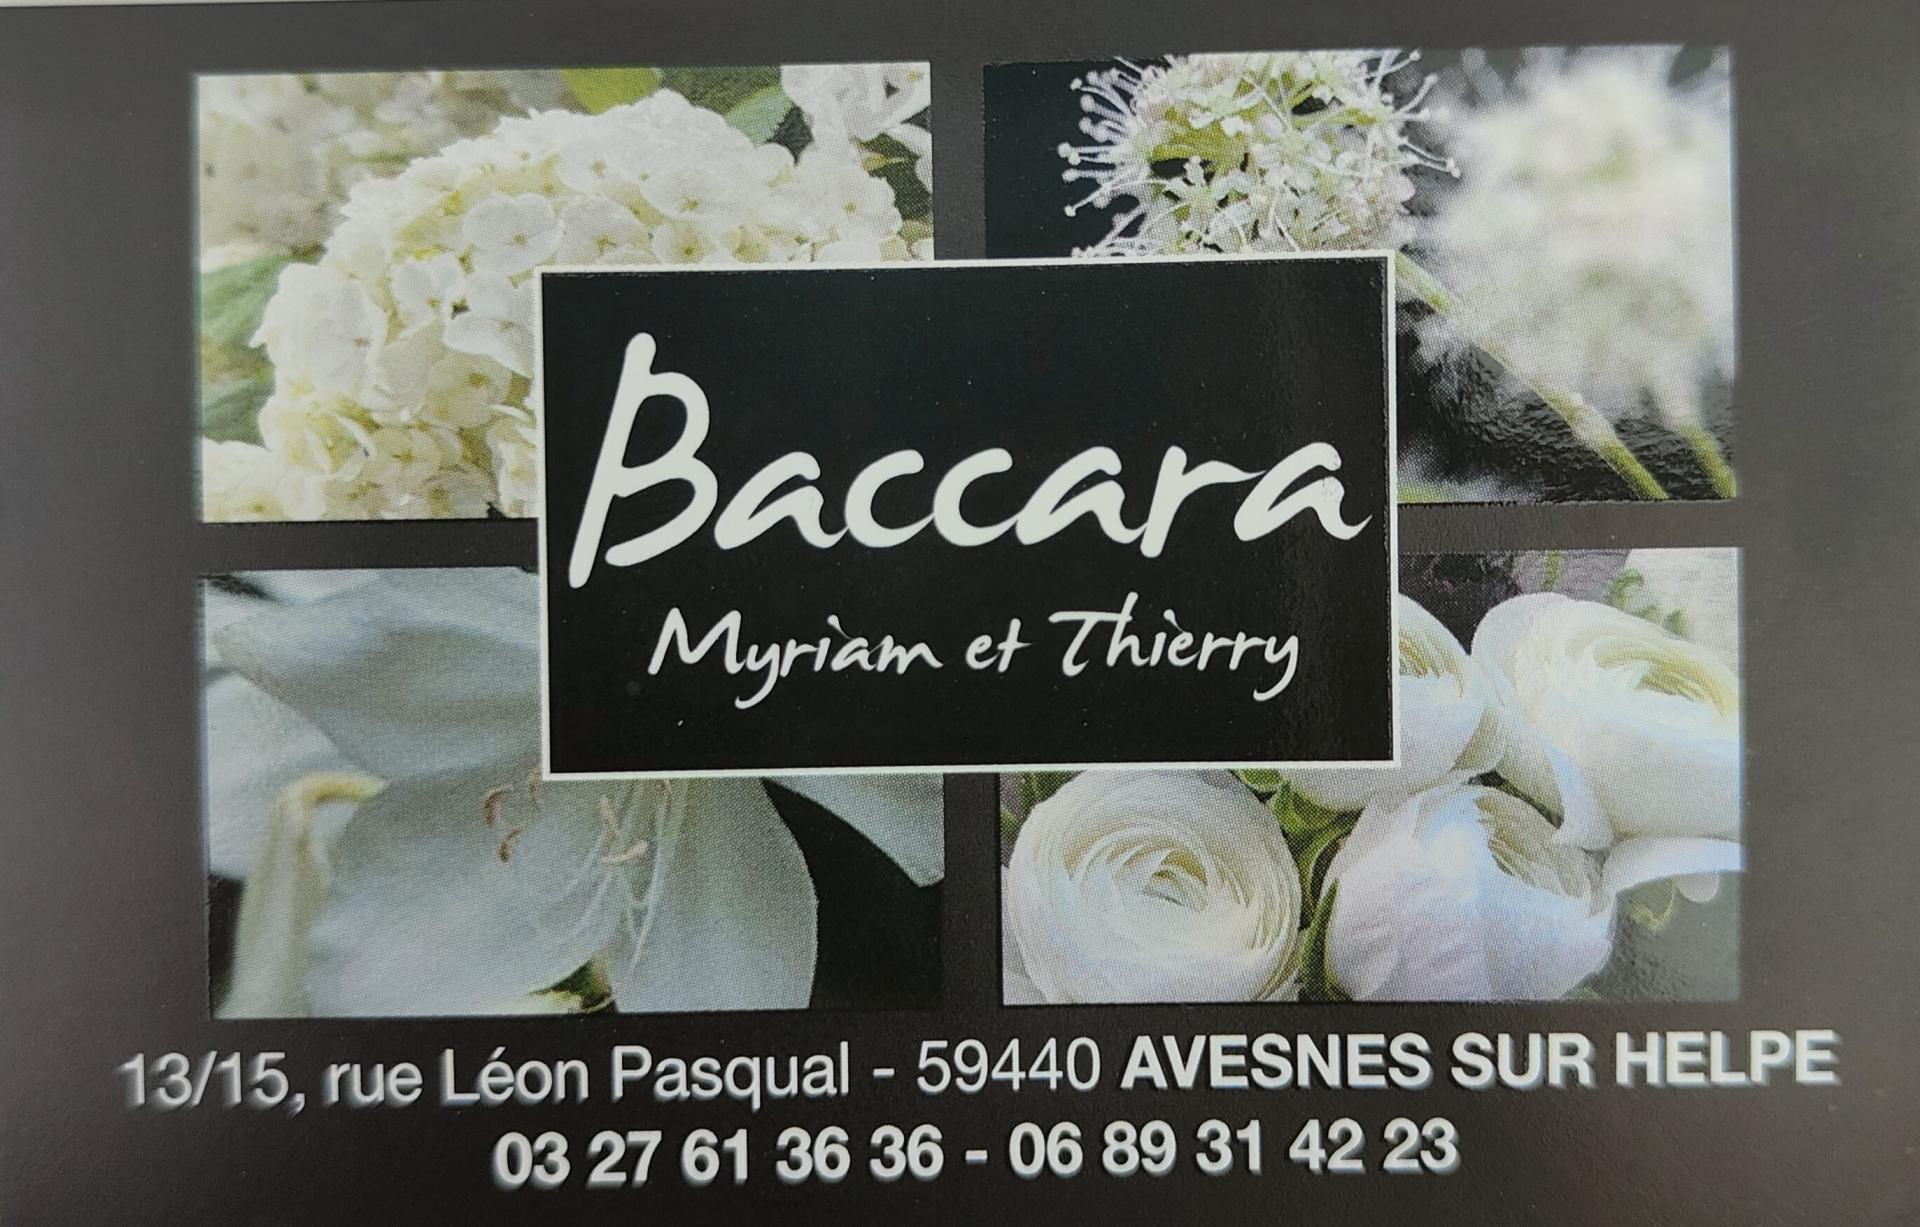 Baccara 2 